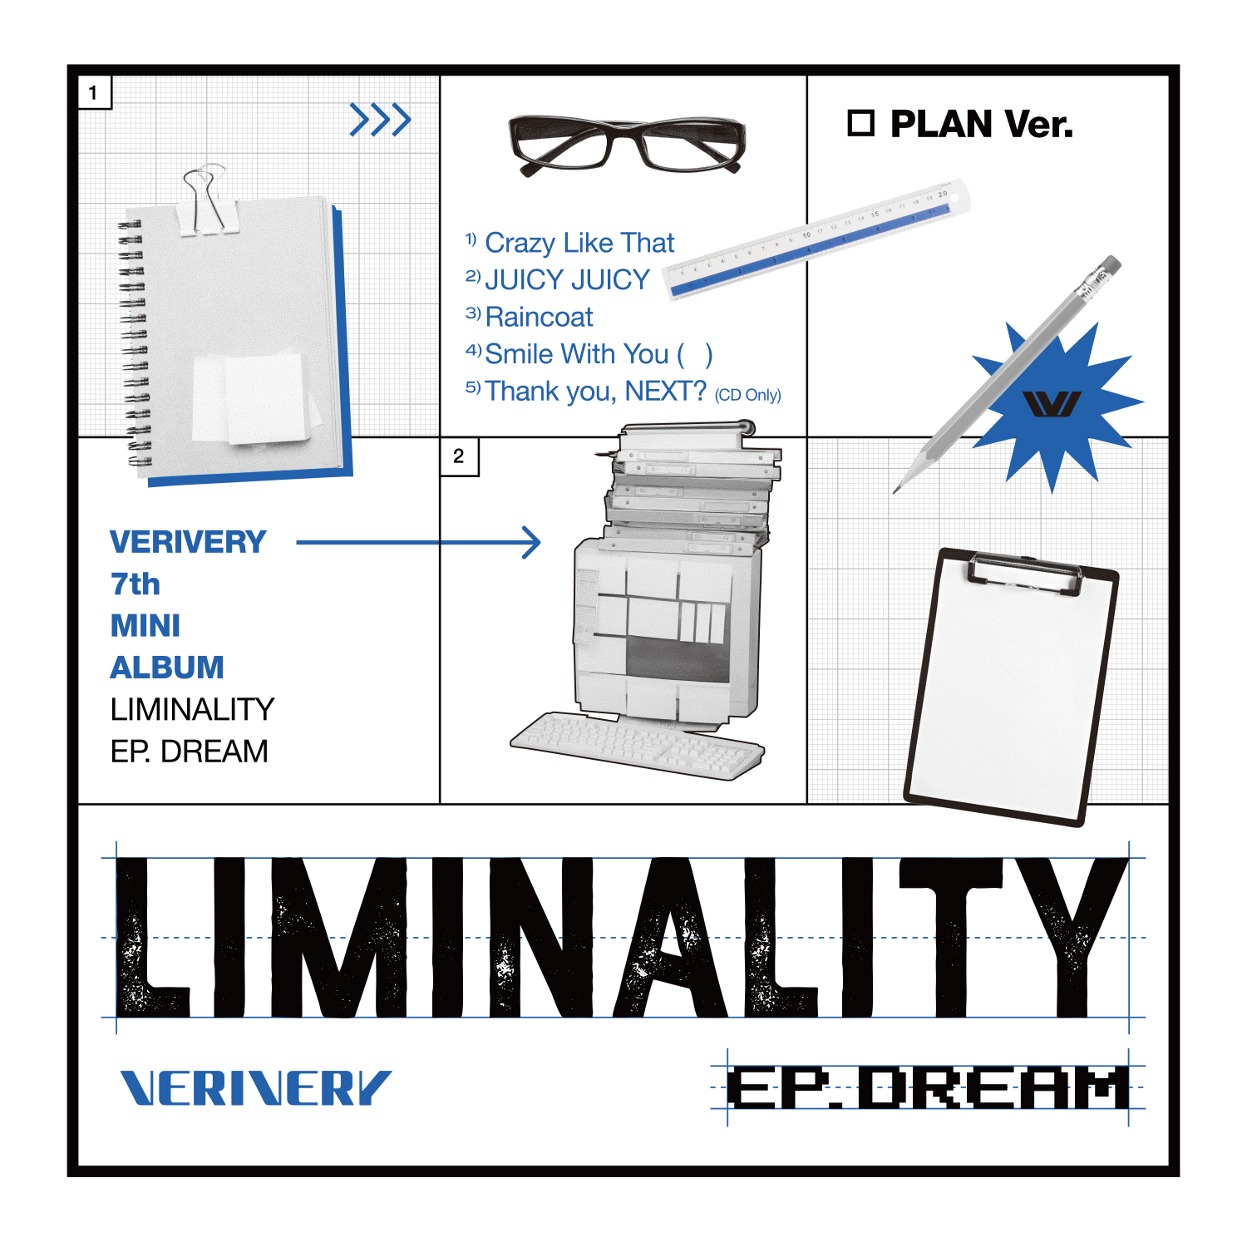 베리베리 (VERIVERY) - 미니앨범 7집 [Liminality - EP.DREAM] (PLAN Ver.)